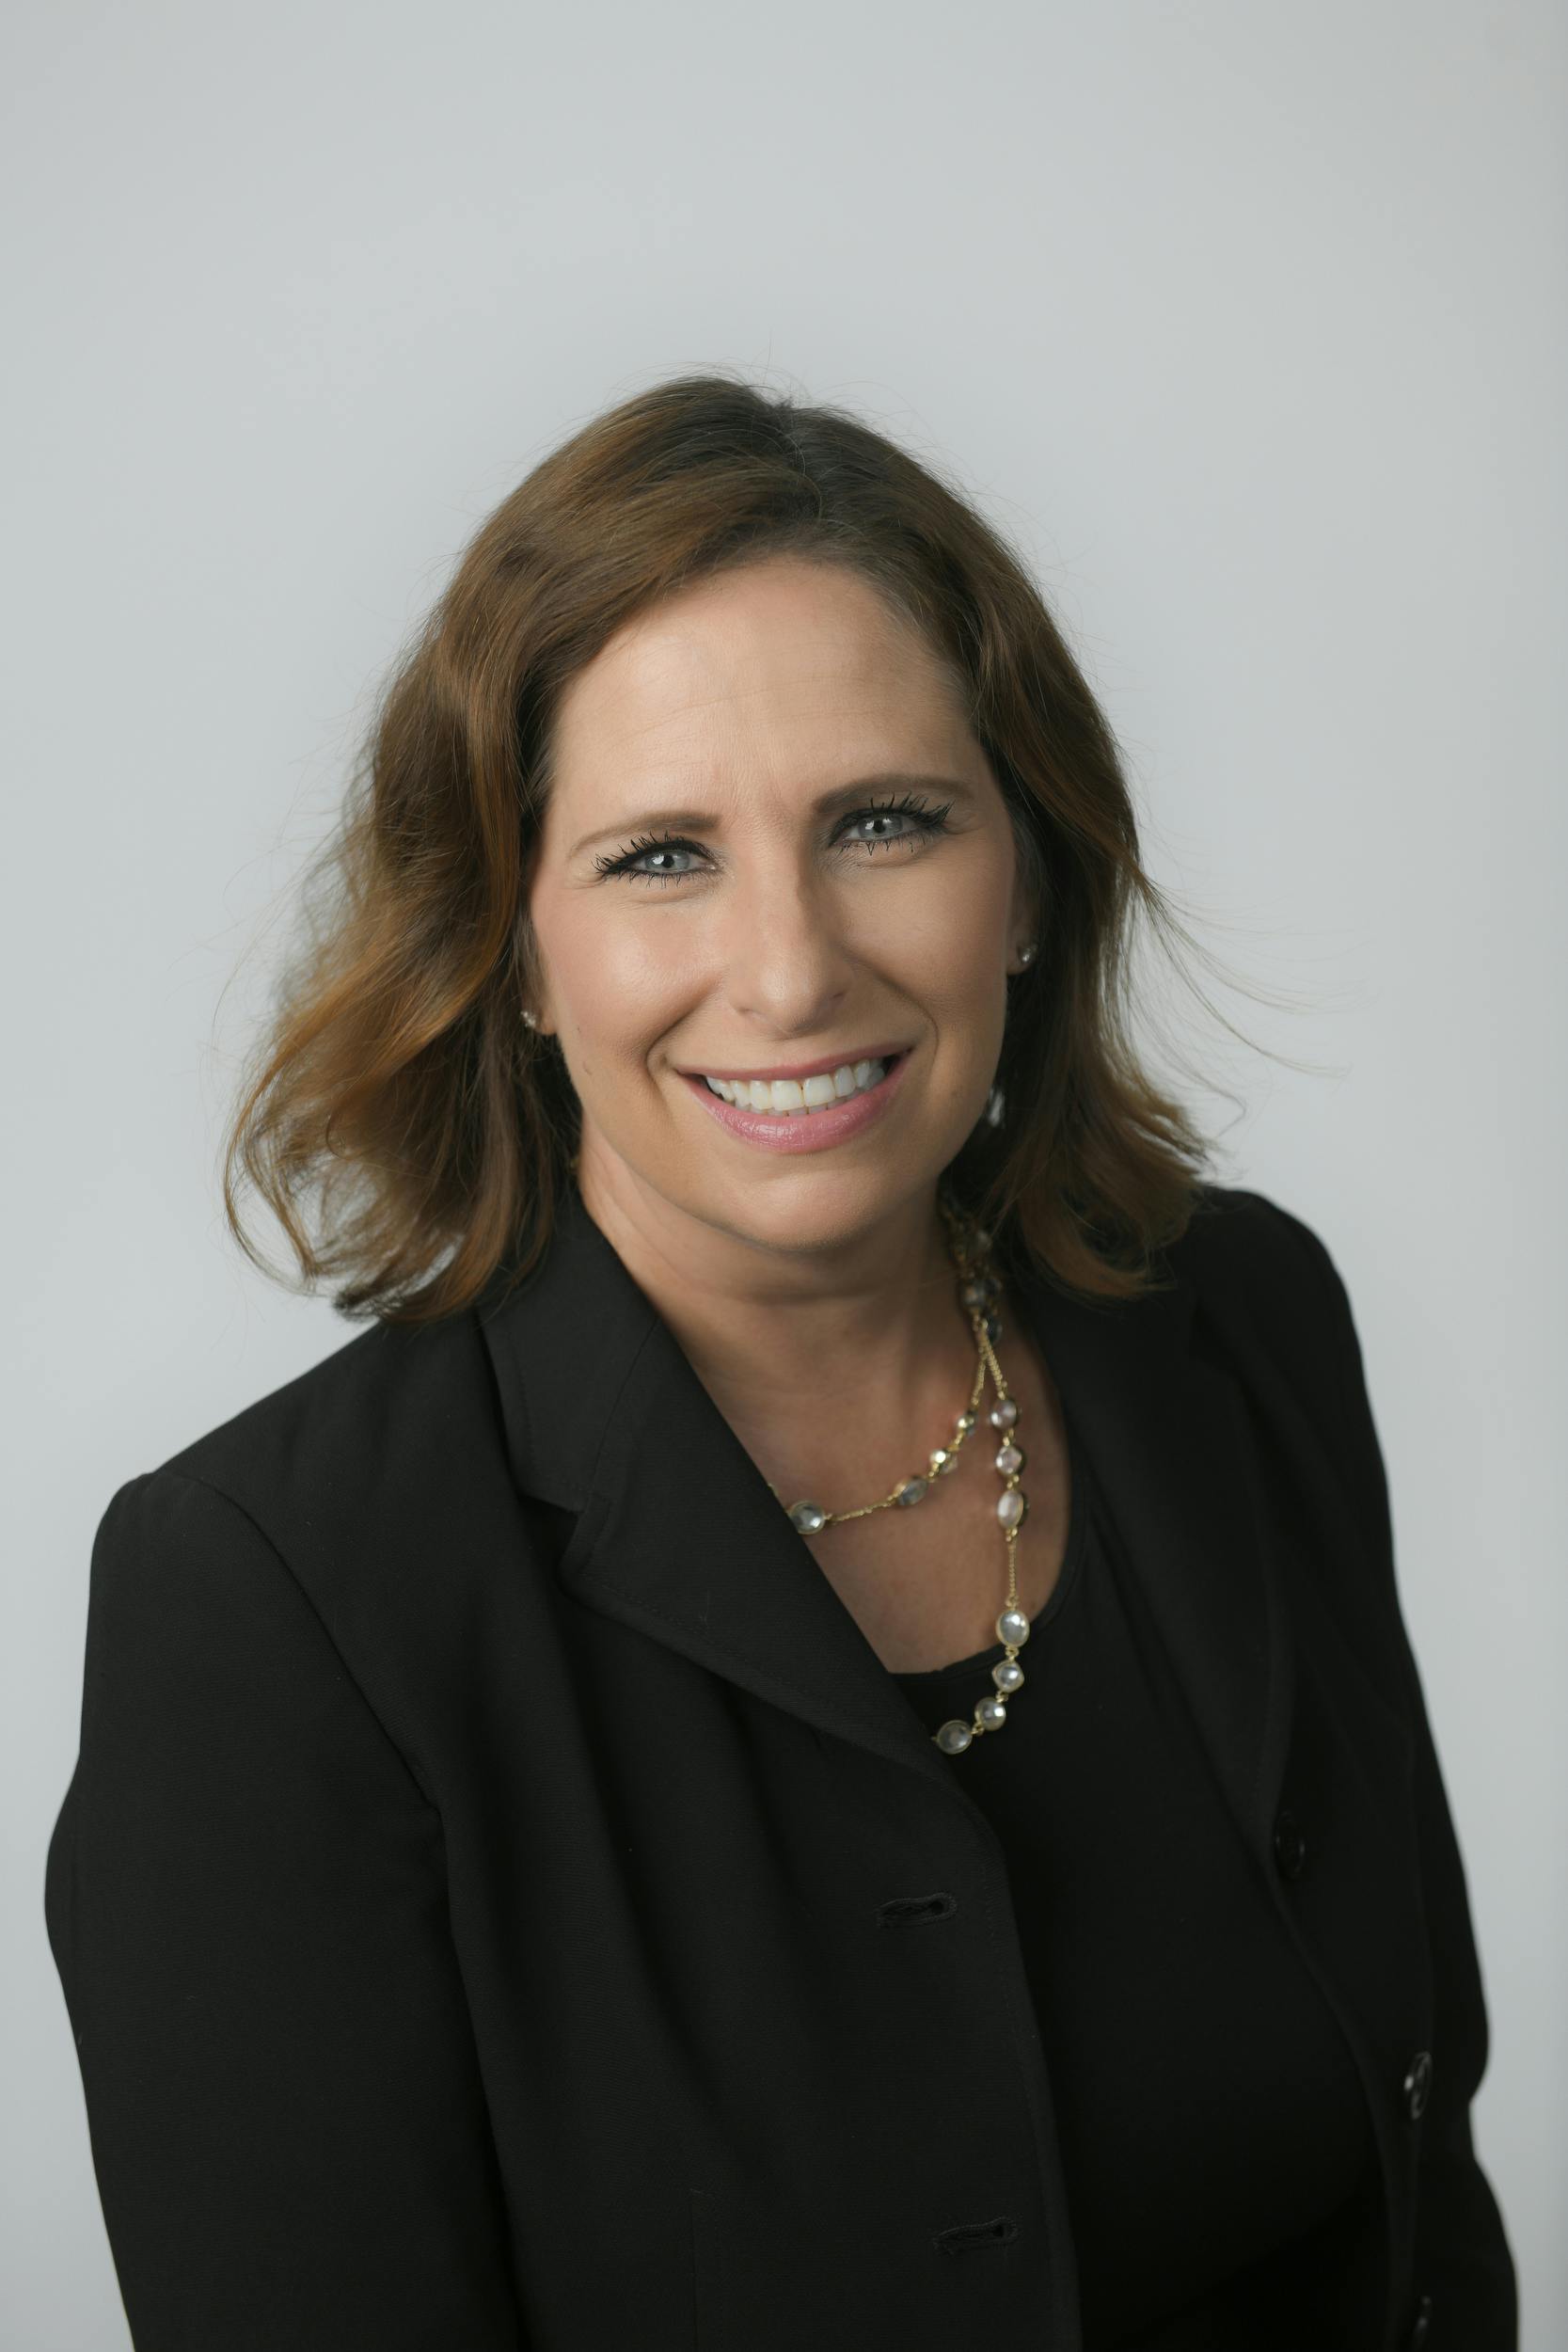 Team member, Deborah Glickman